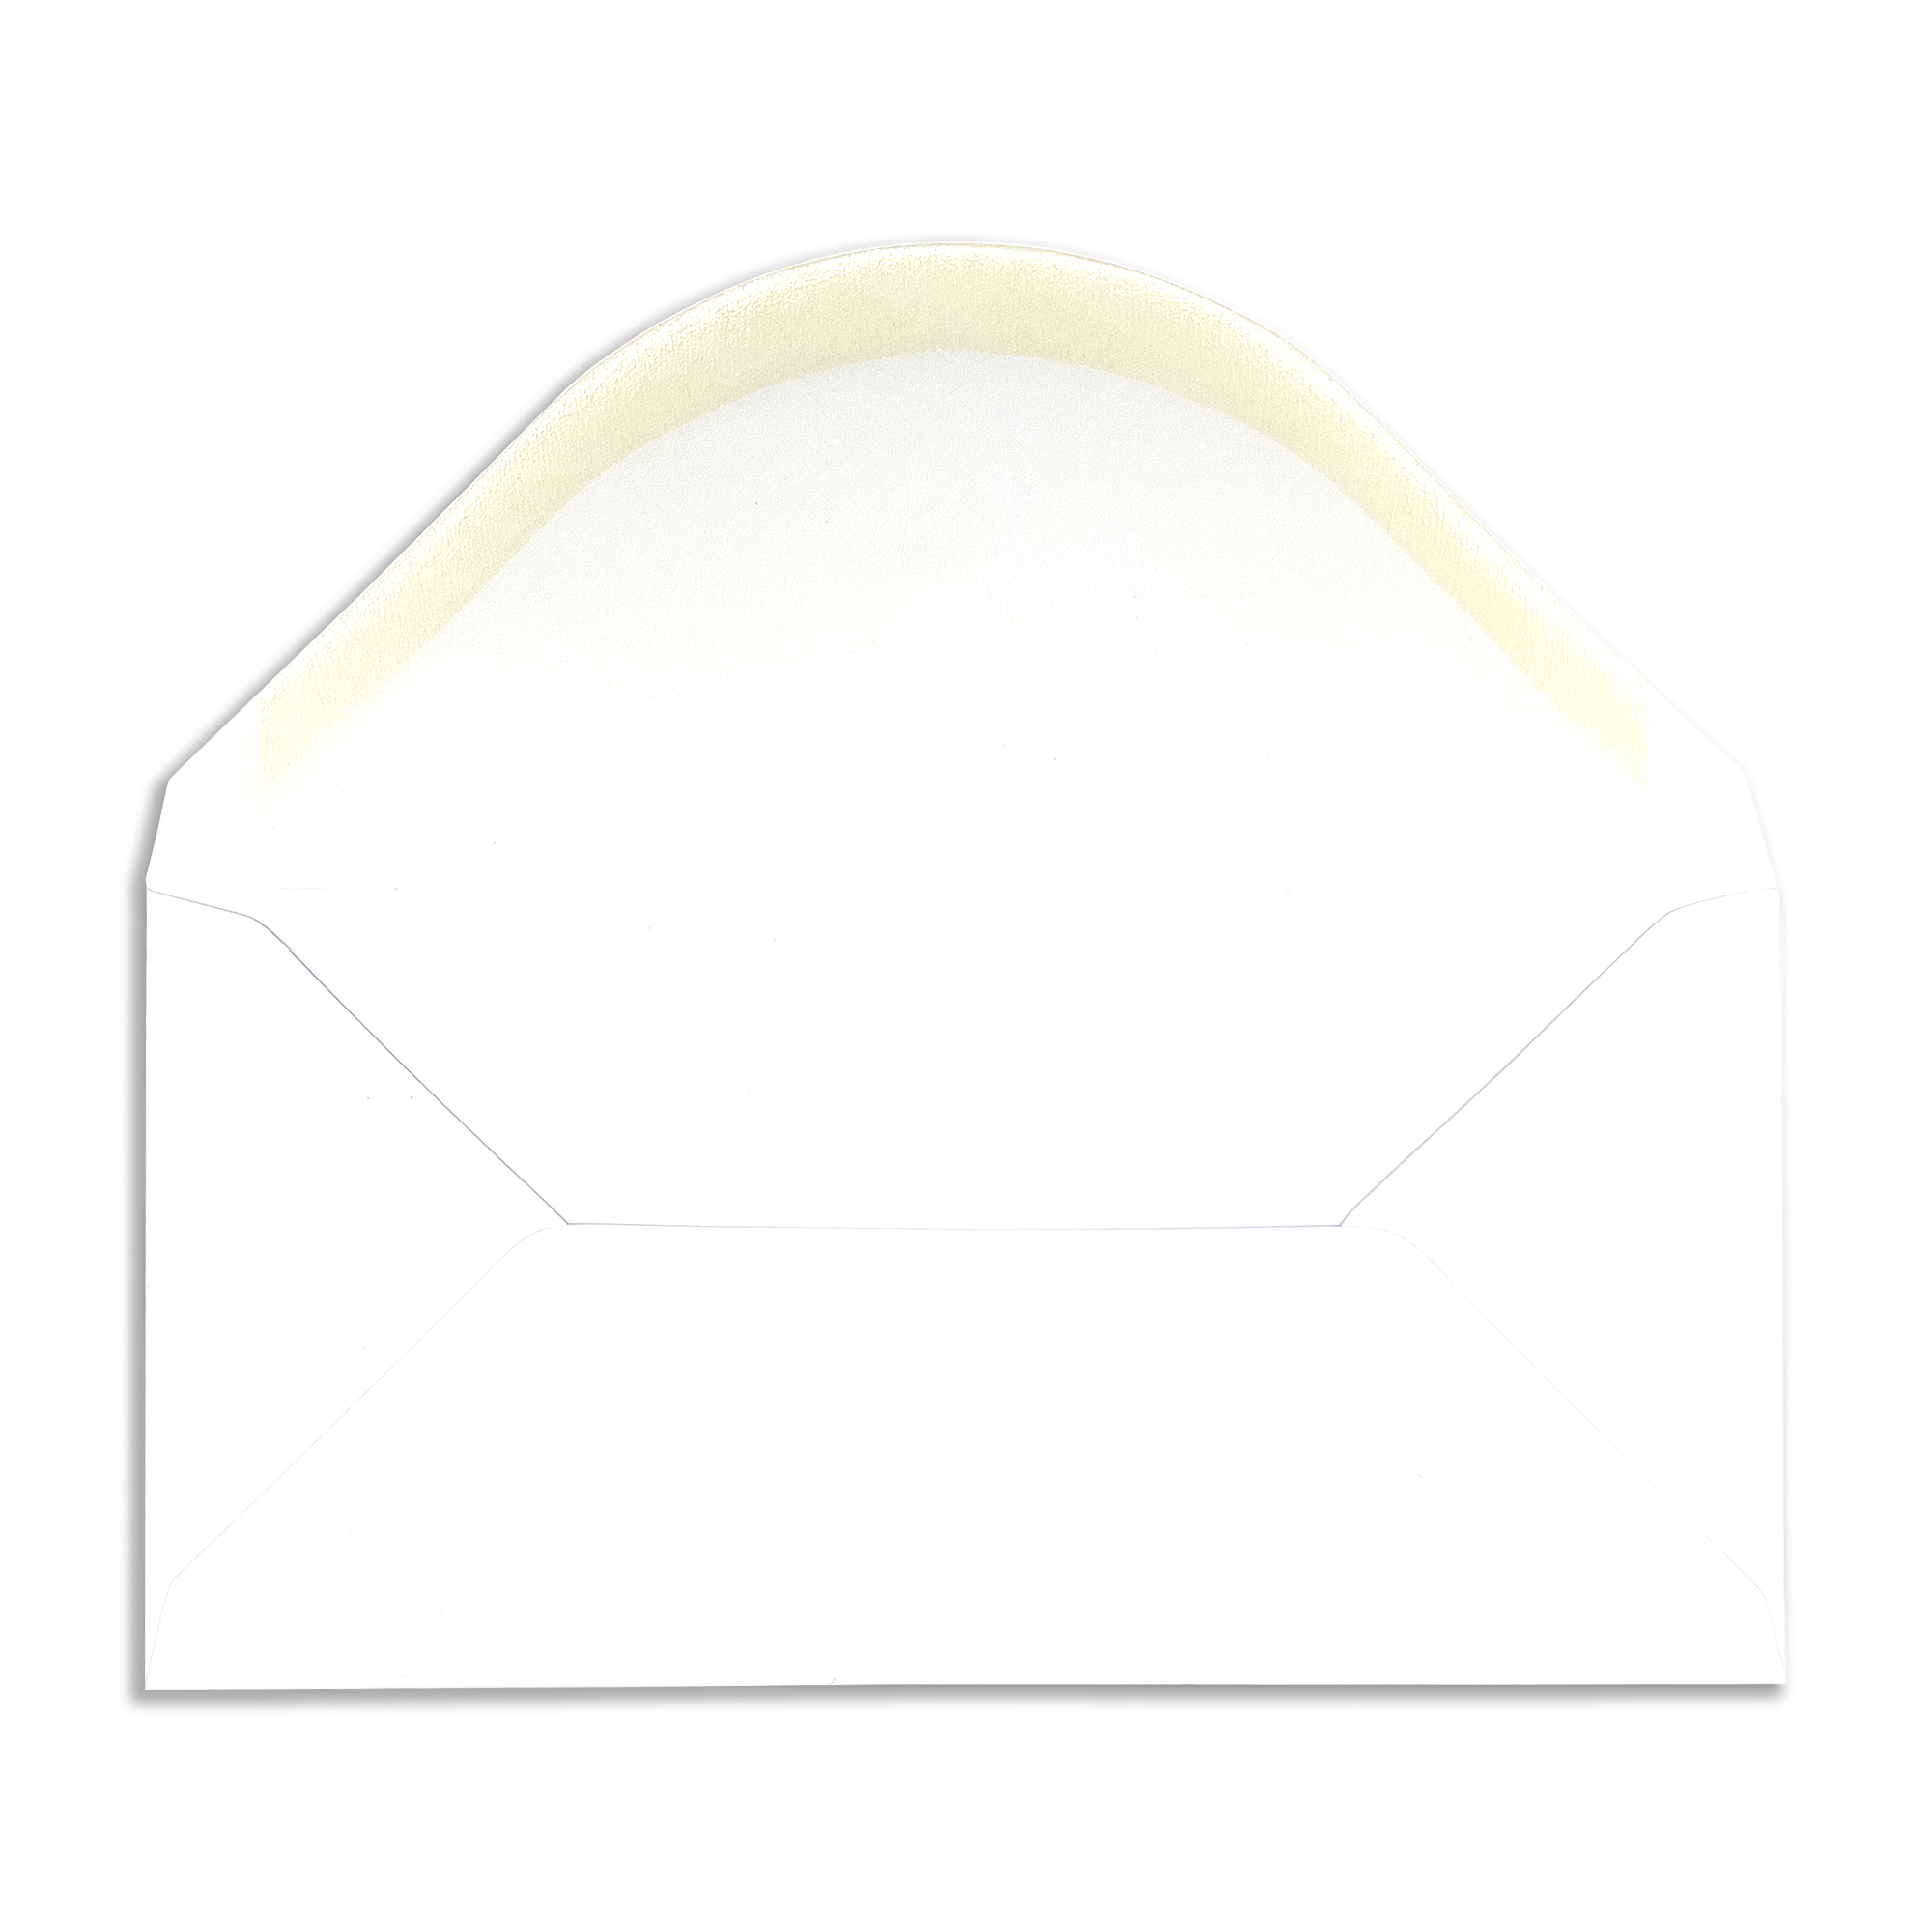 95×195-white-envelopes-flap-open